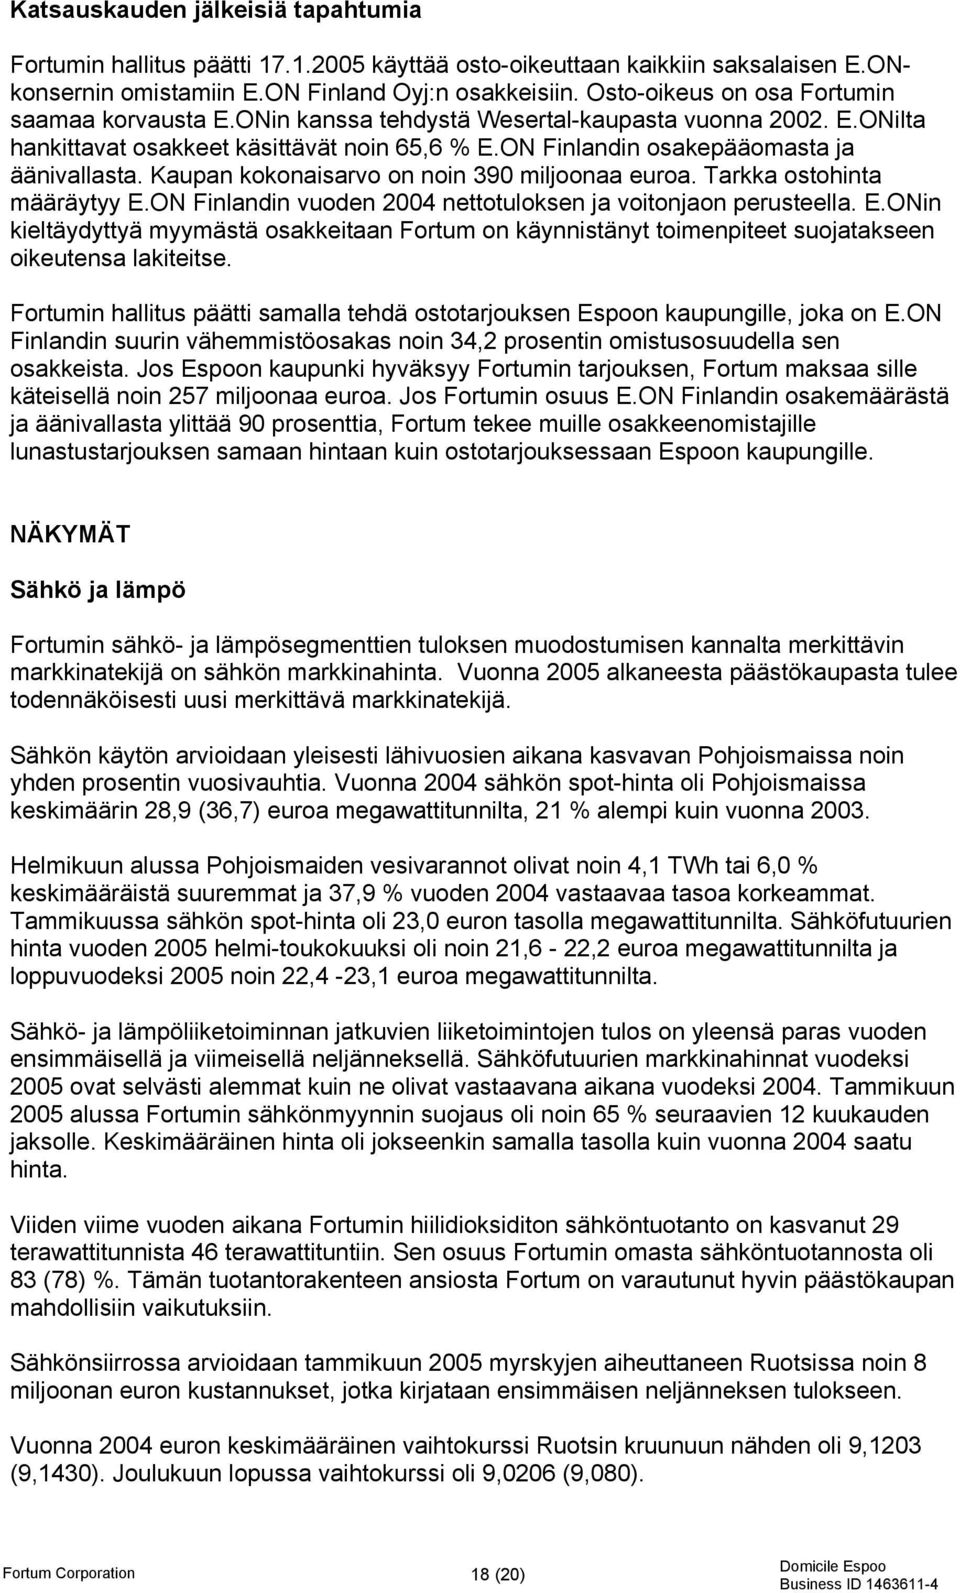 Kaupan kokonaisarvo on noin 390 miljoonaa euroa. Tarkka ostohinta määräytyy E.ON Finlandin vuoden 2004 nettotuloksen ja voitonjaon perusteella. E.ONin kieltäydyttyä myymästä osakkeitaan Fortum on käynnistänyt toimenpiteet suojatakseen oikeutensa lakiteitse.